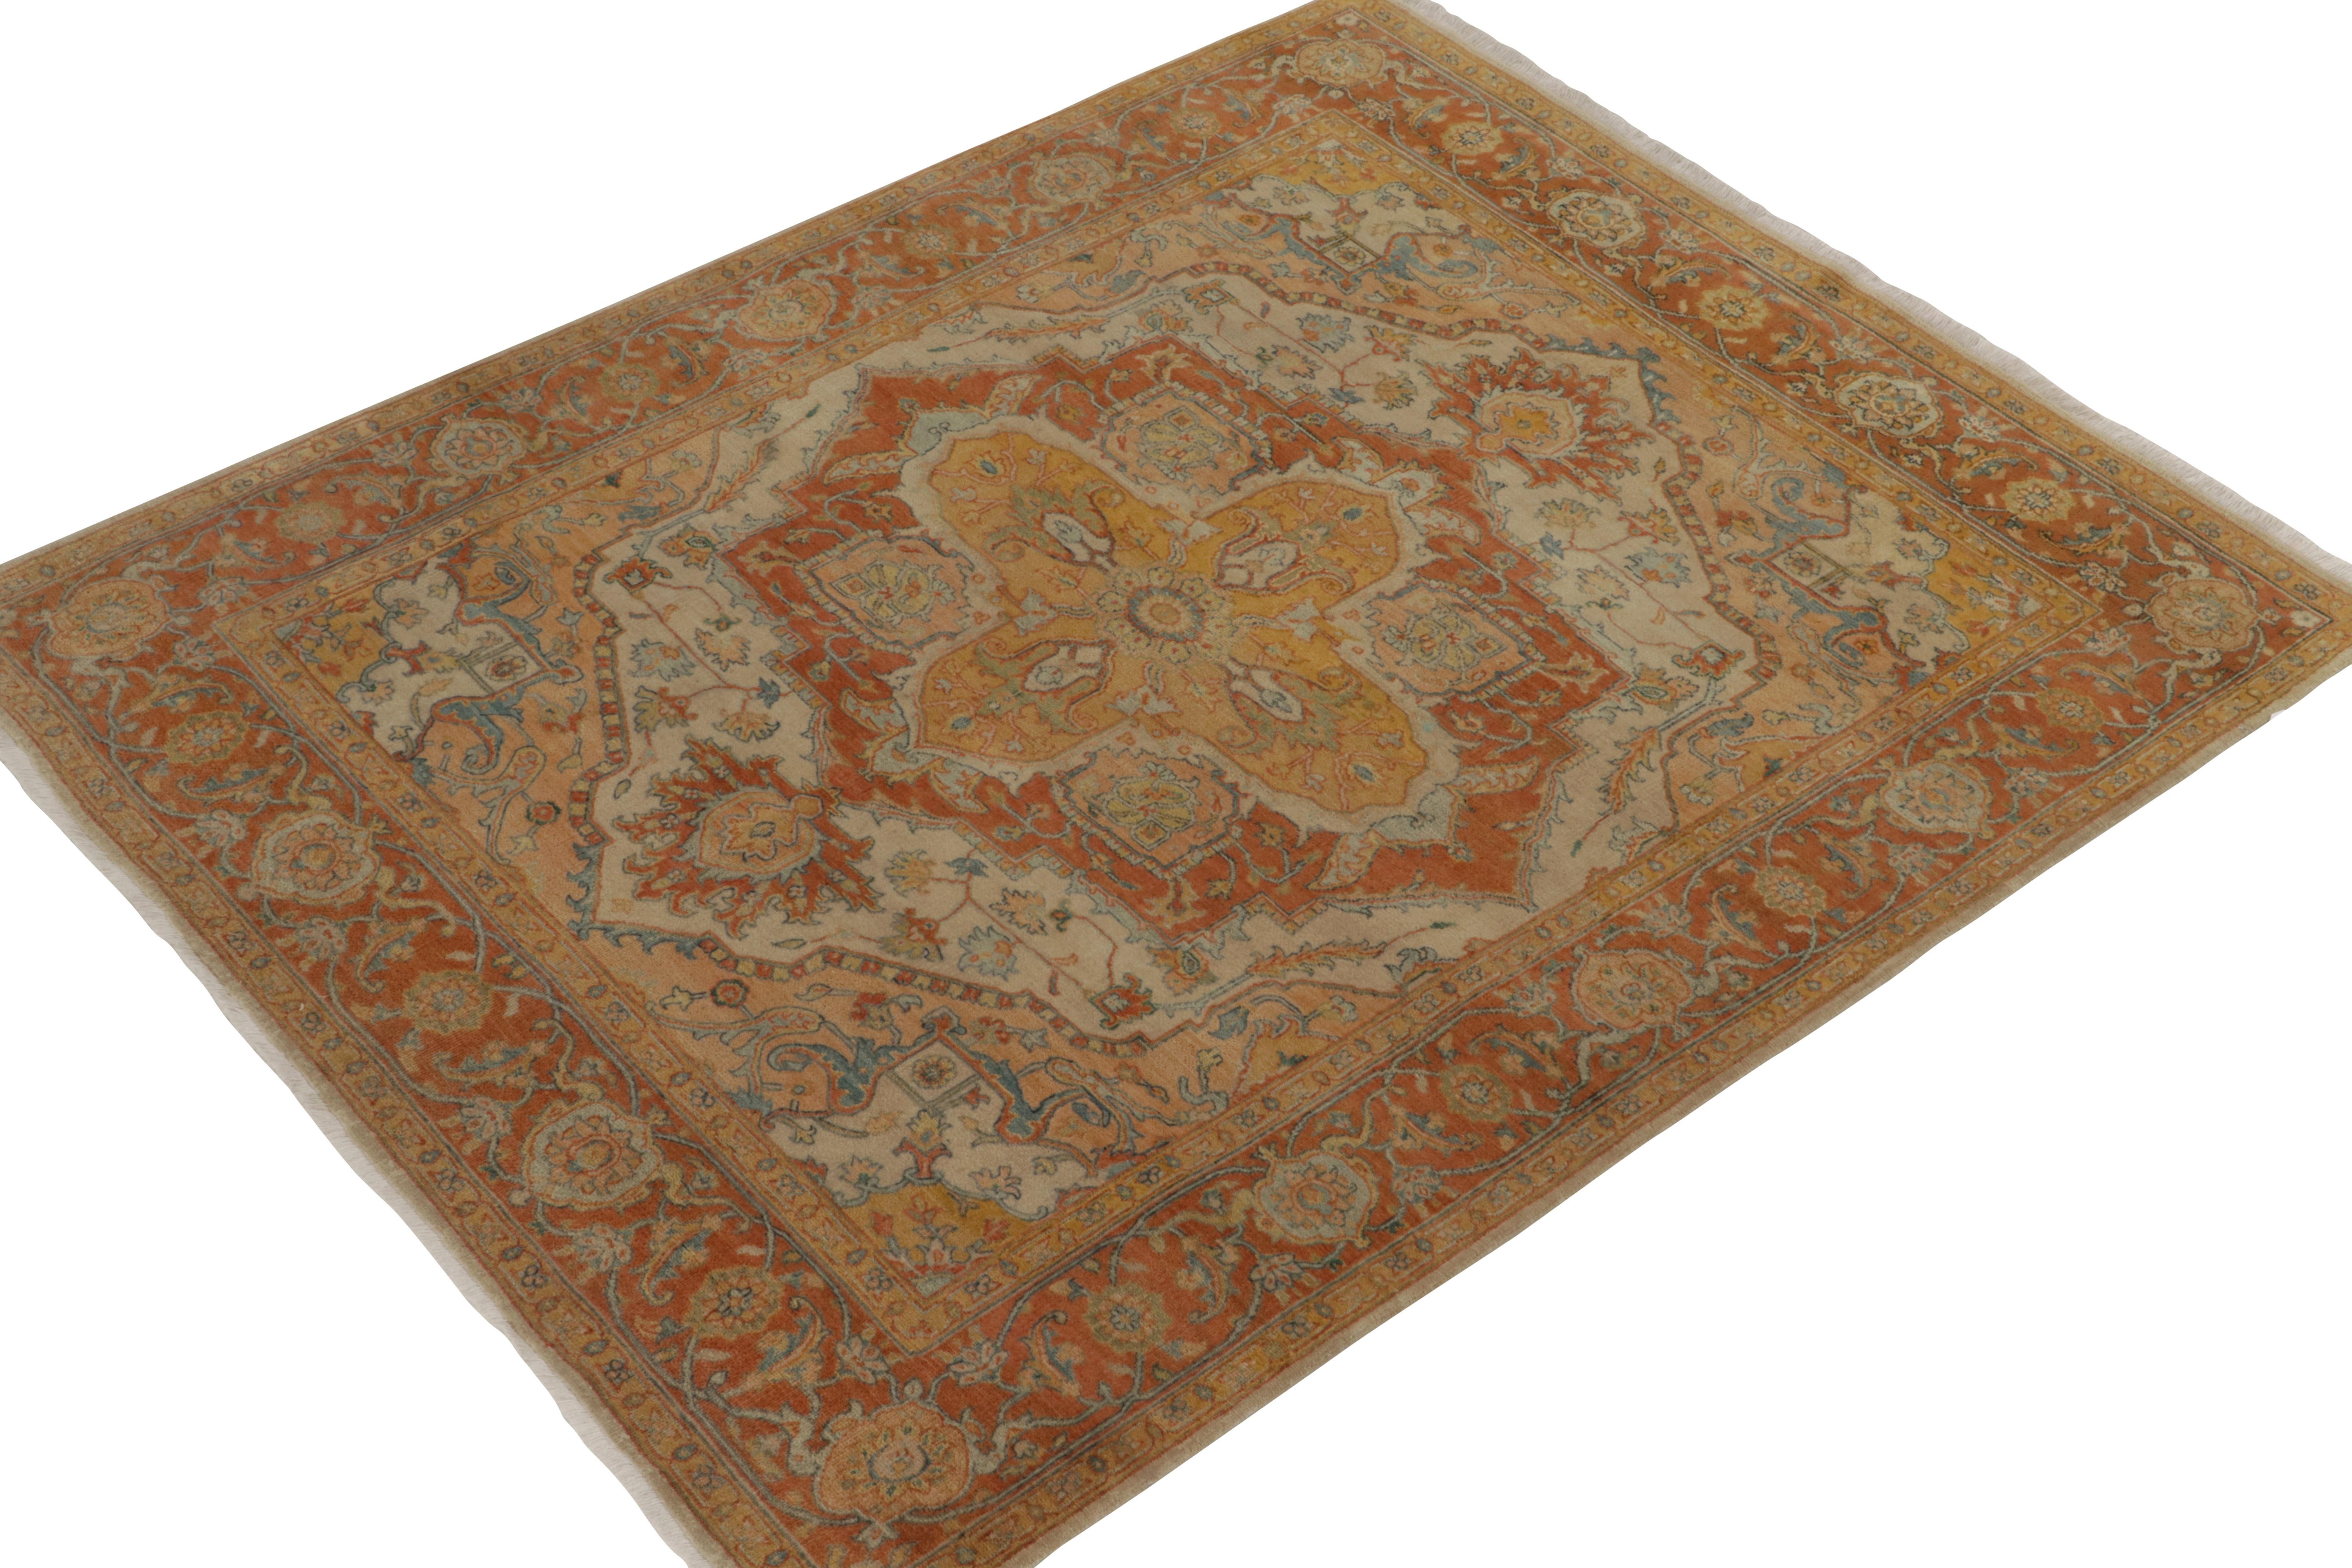 Noué à la main en laine, ce 5x7 de notre collection Modern Classics s'inspire des tapis persans Heriz anciens très convoités. 

Sur le Design/One : Des motifs floraux enveloppent un médaillon royal en or et rouge, exemplaire de la chaleur et de la